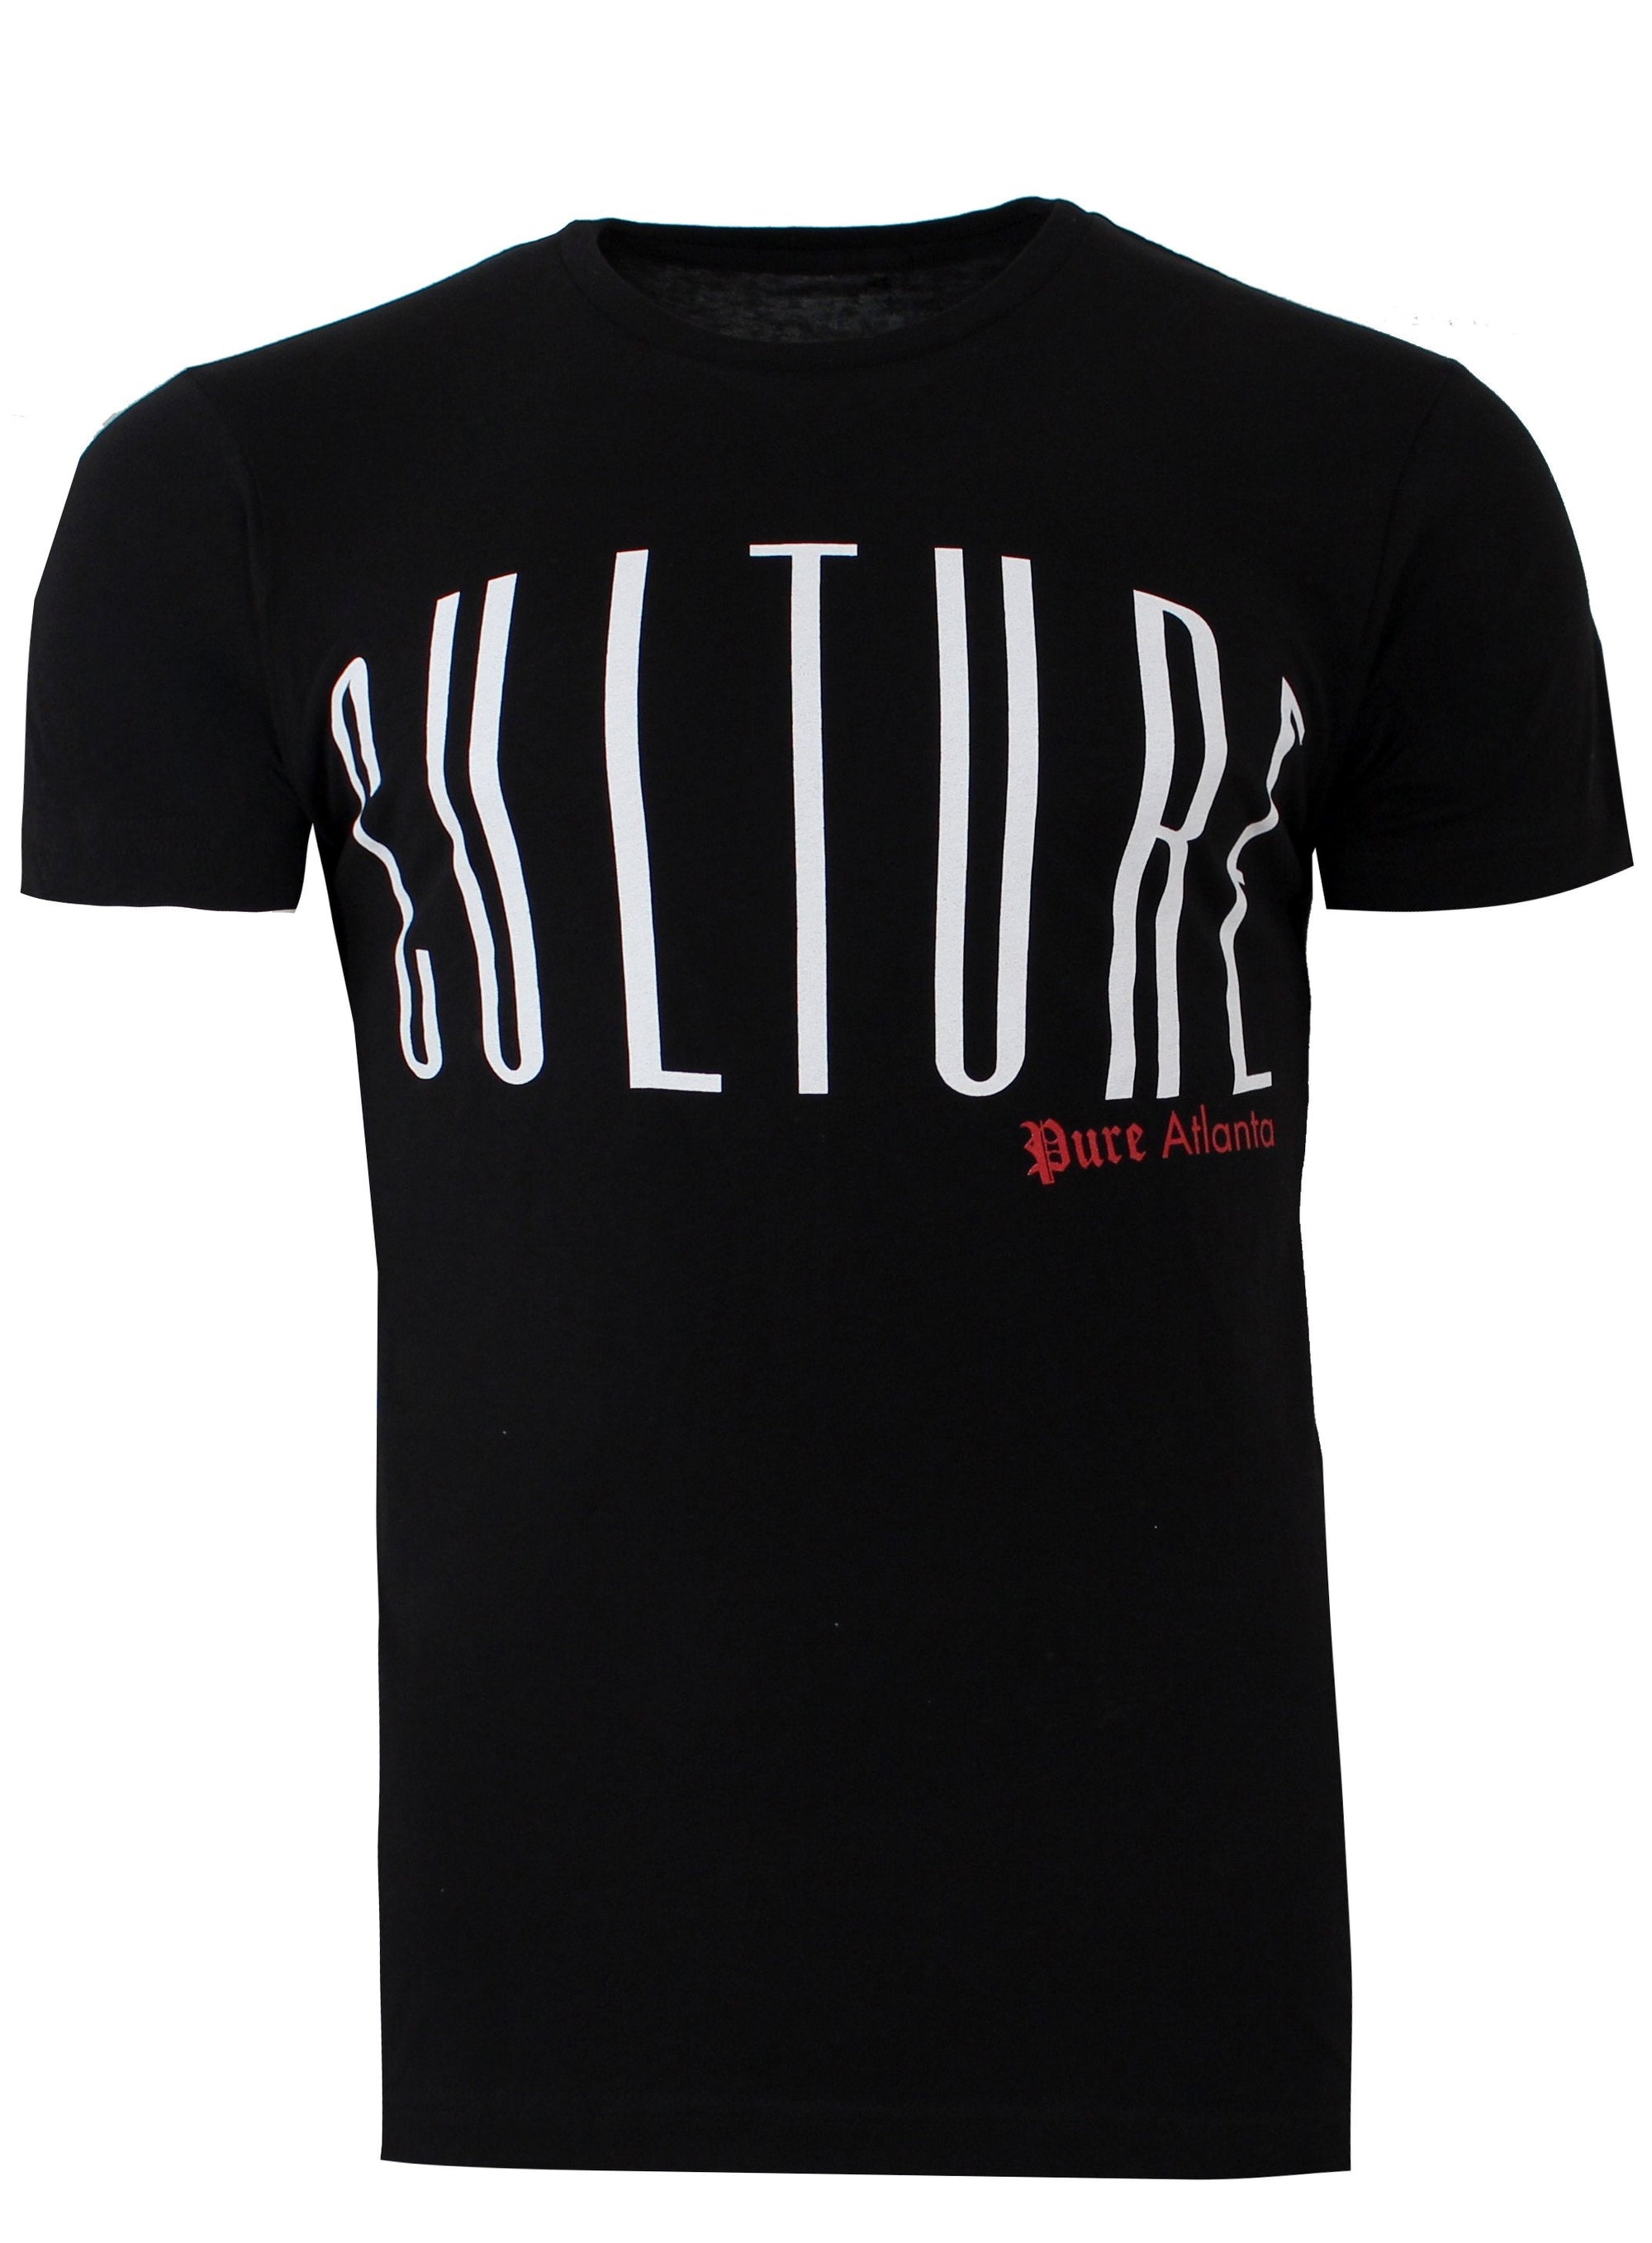 Pure Culture Clean Tee Shirt - Black